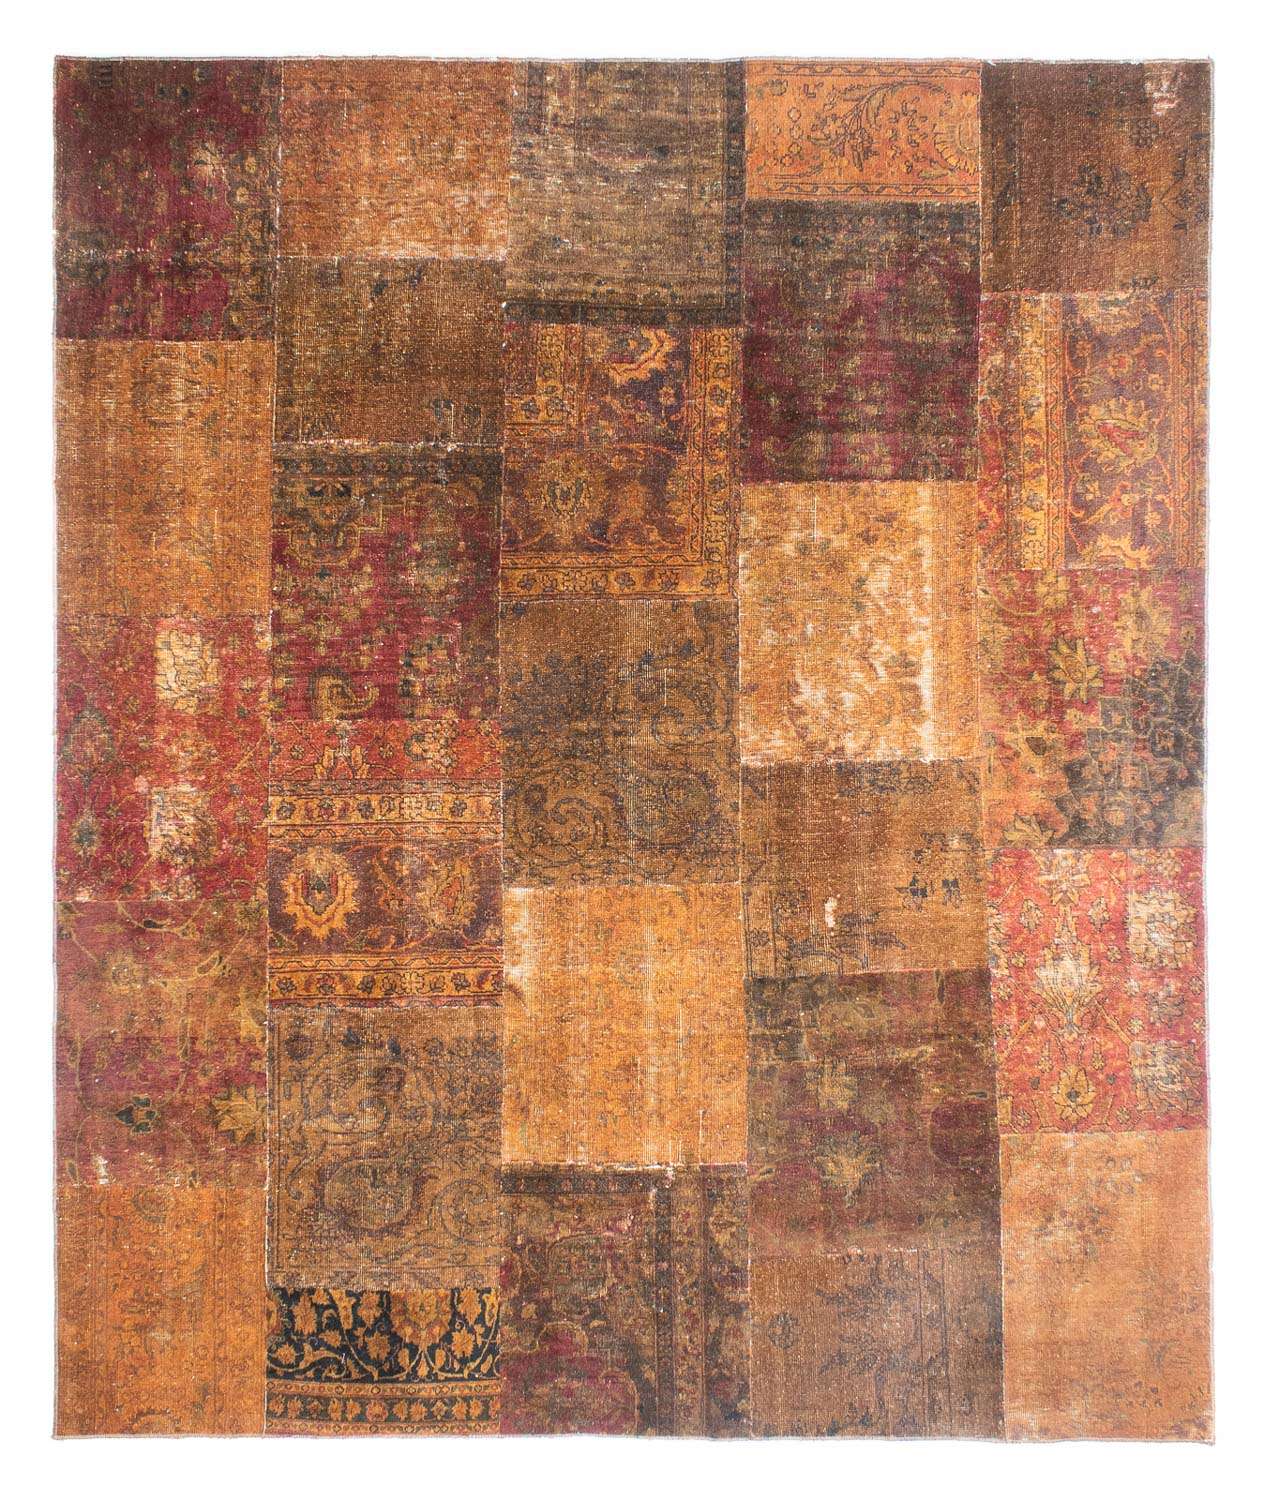 Tapis patchwork - 296 x 246 cm - multicolore